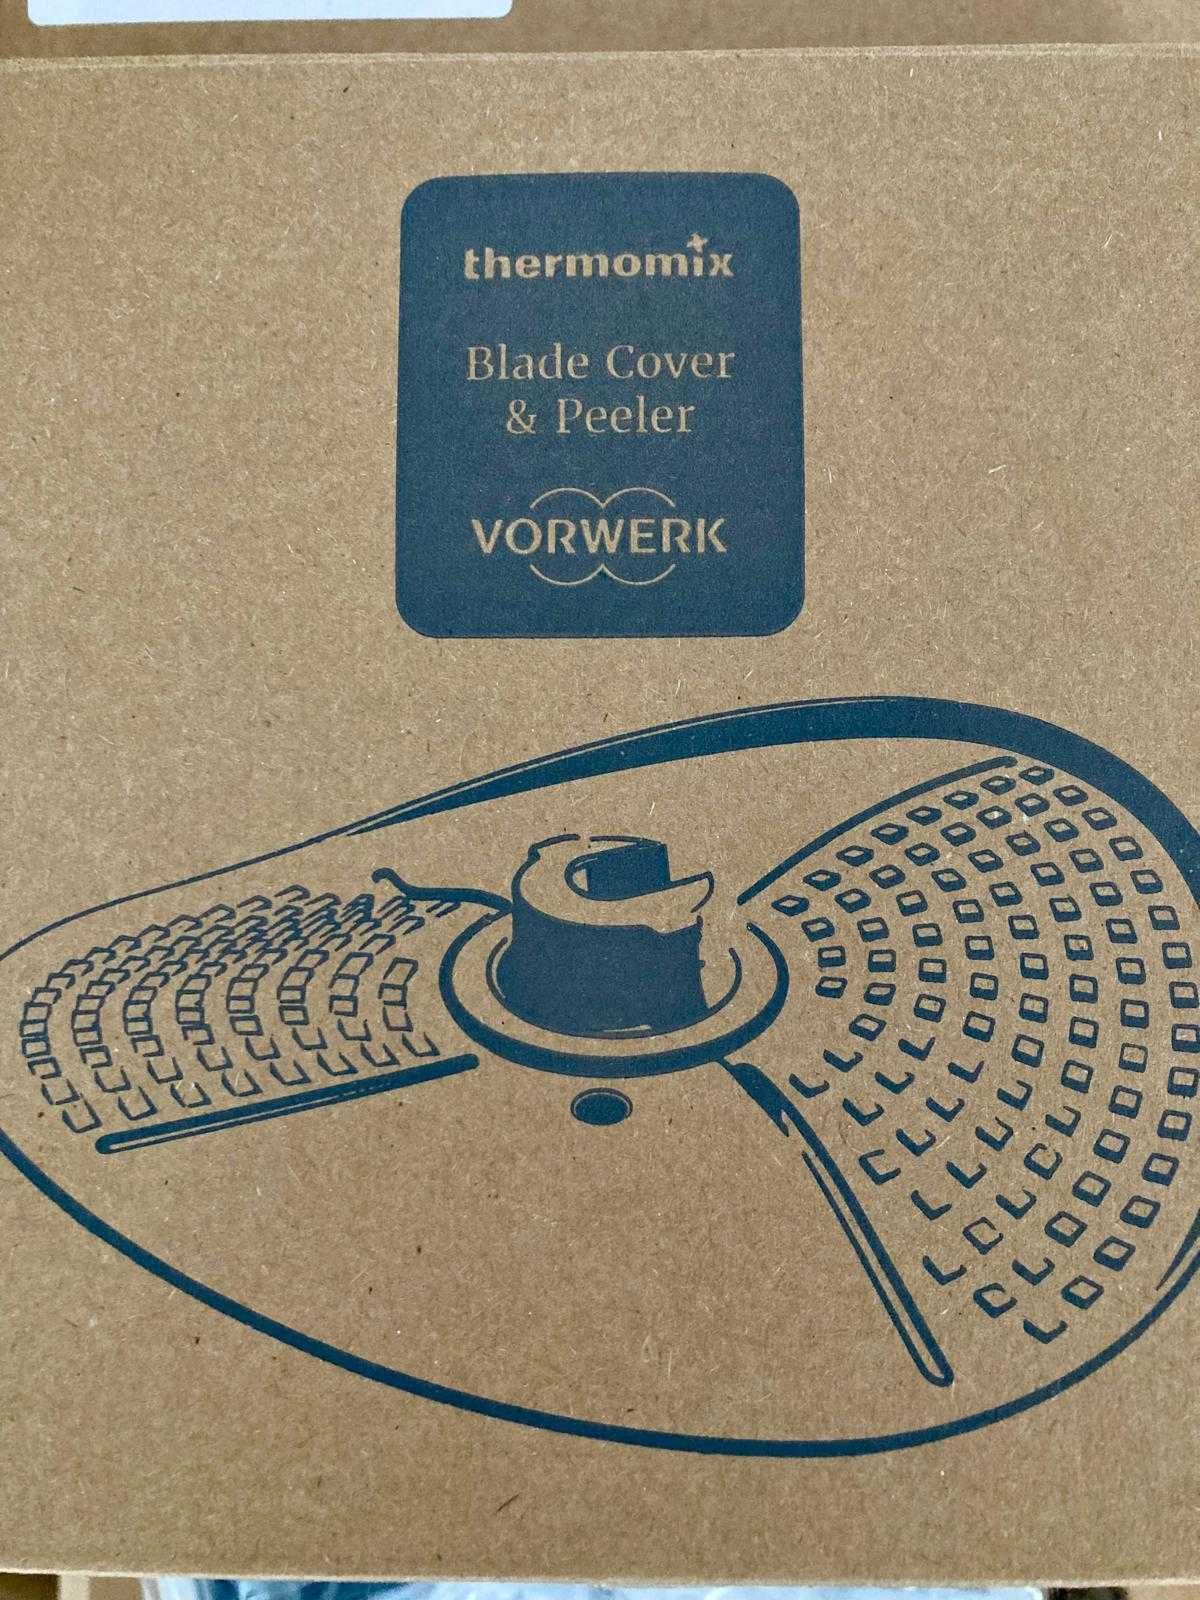 Nowy Thermomix Friend z gwarancją